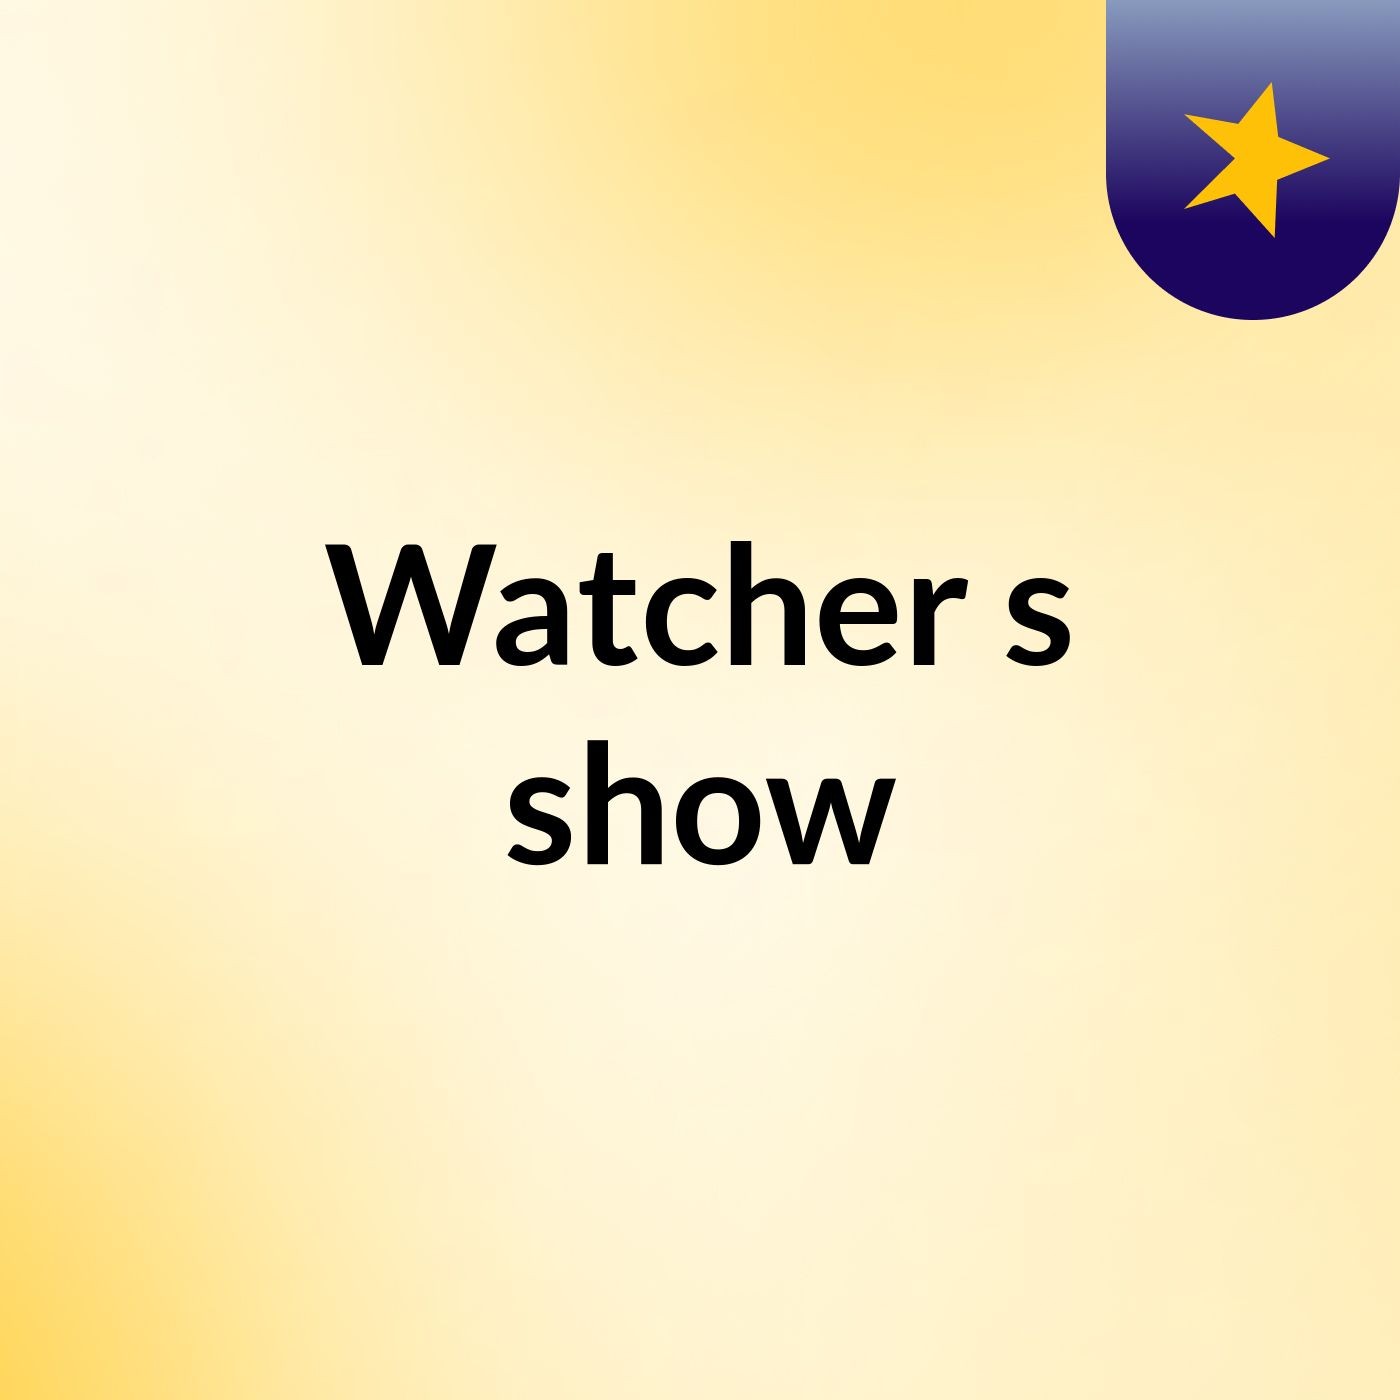 Watcher's show